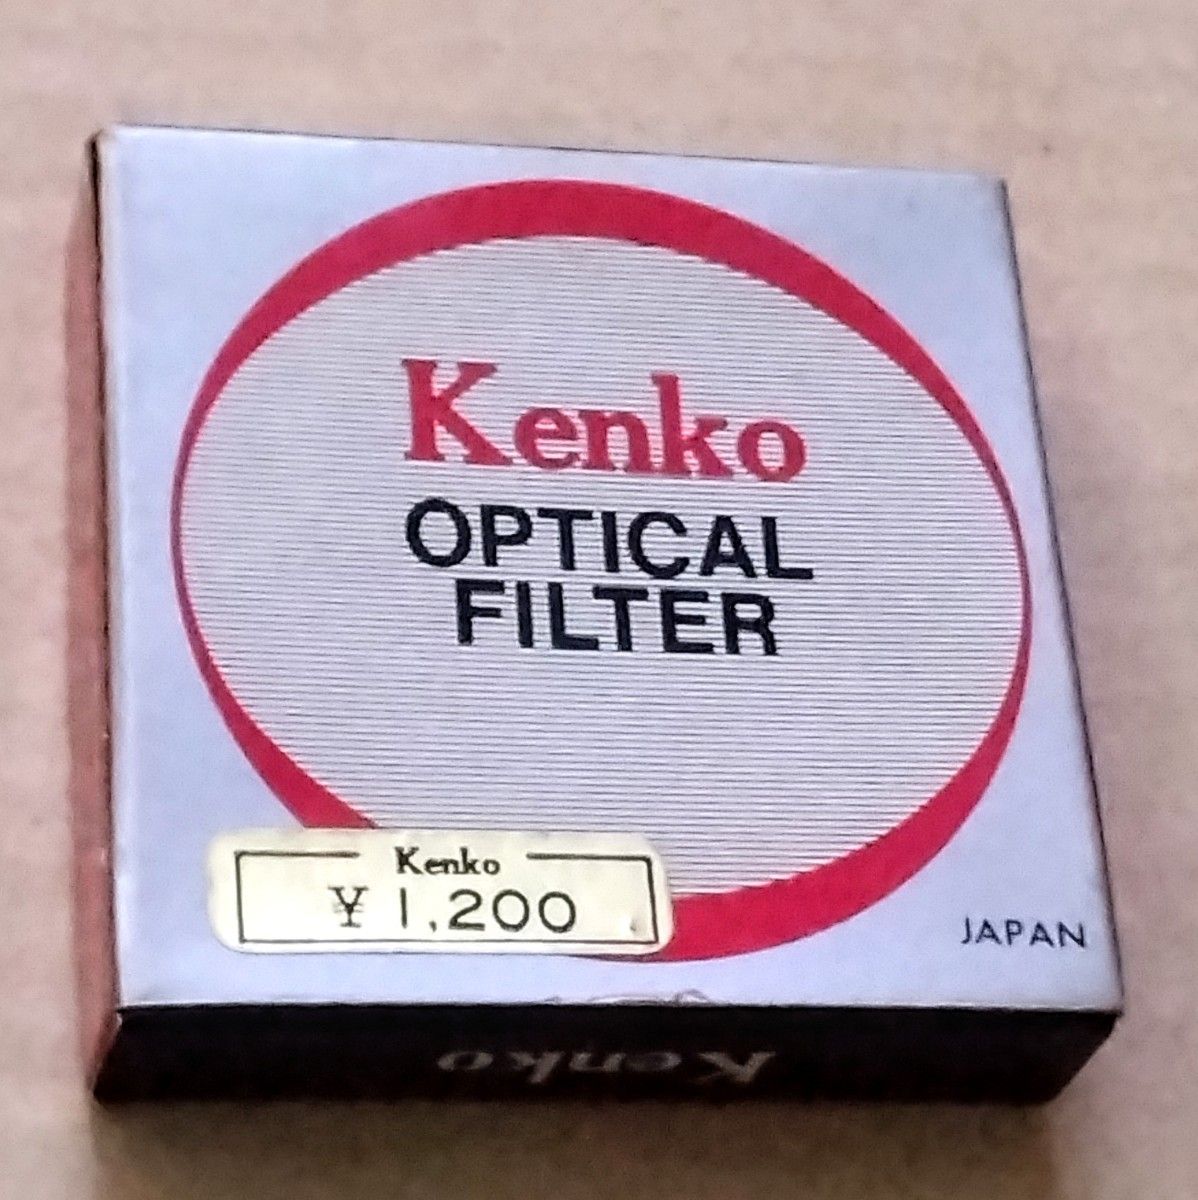 Kenko  OPTICAL  FILTER  ／  Kenko  CLOSE-UP  No.3  46mm